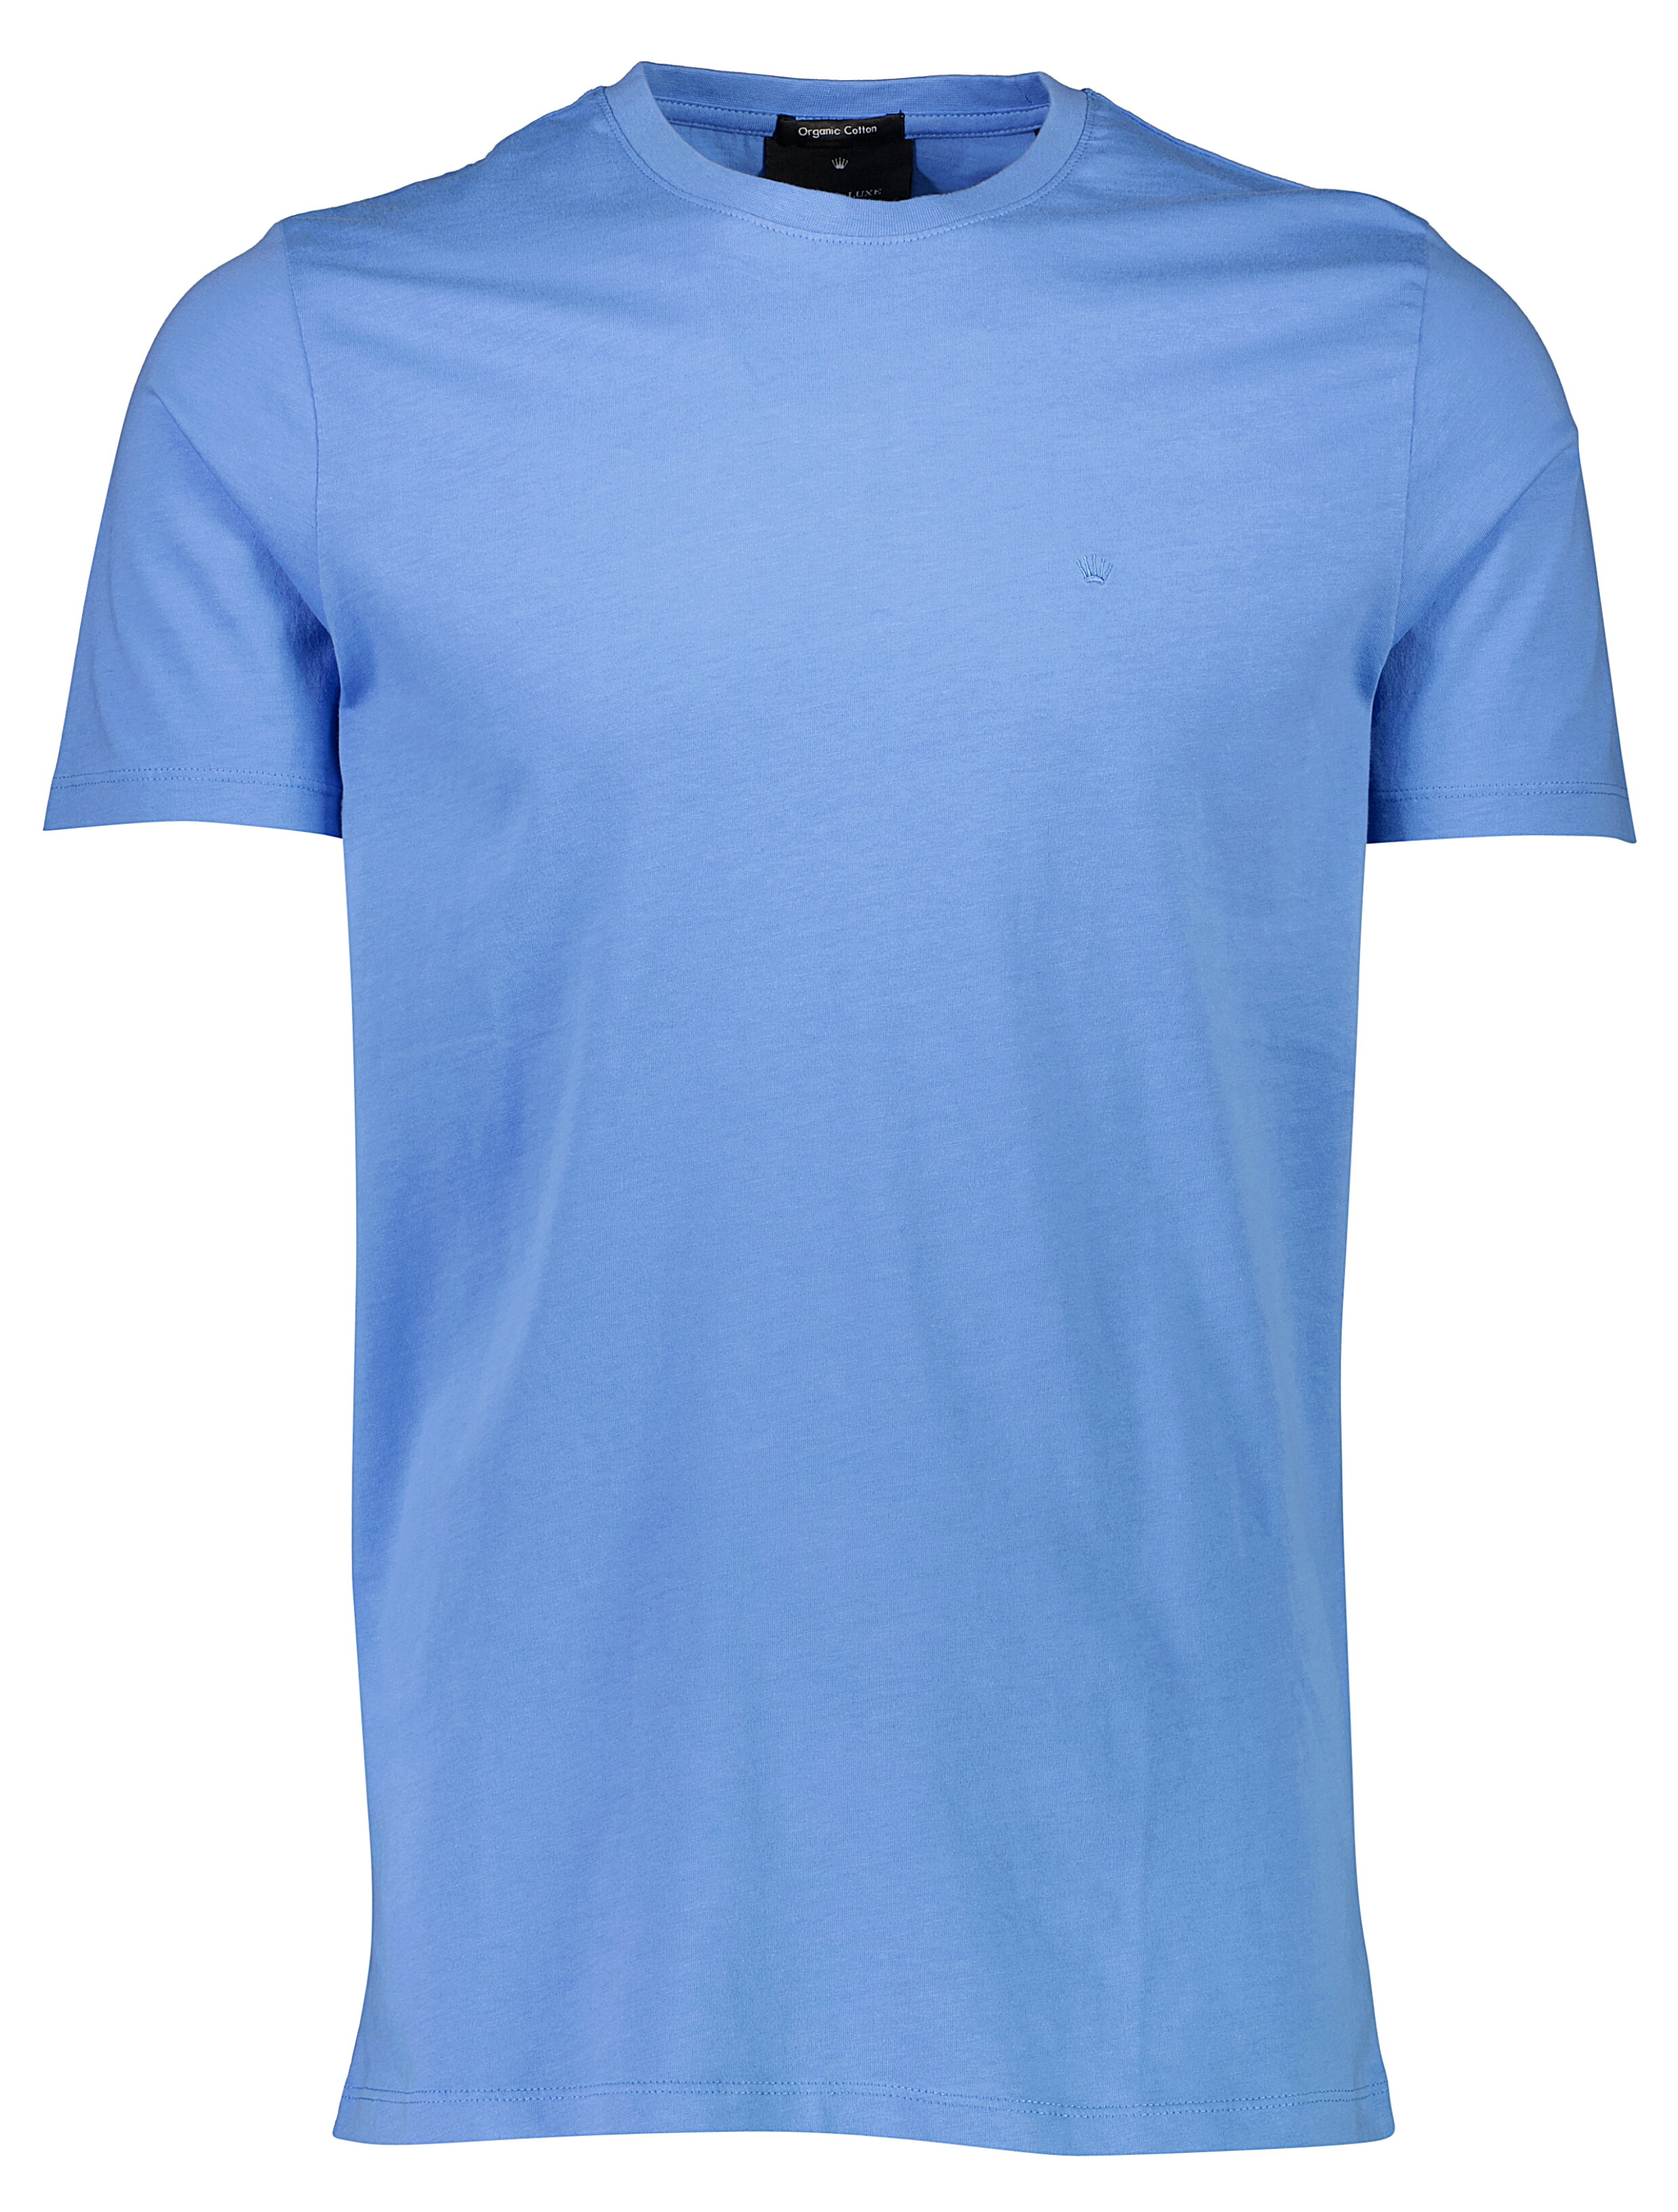 Junk de Luxe T-shirt blå / aqua blue